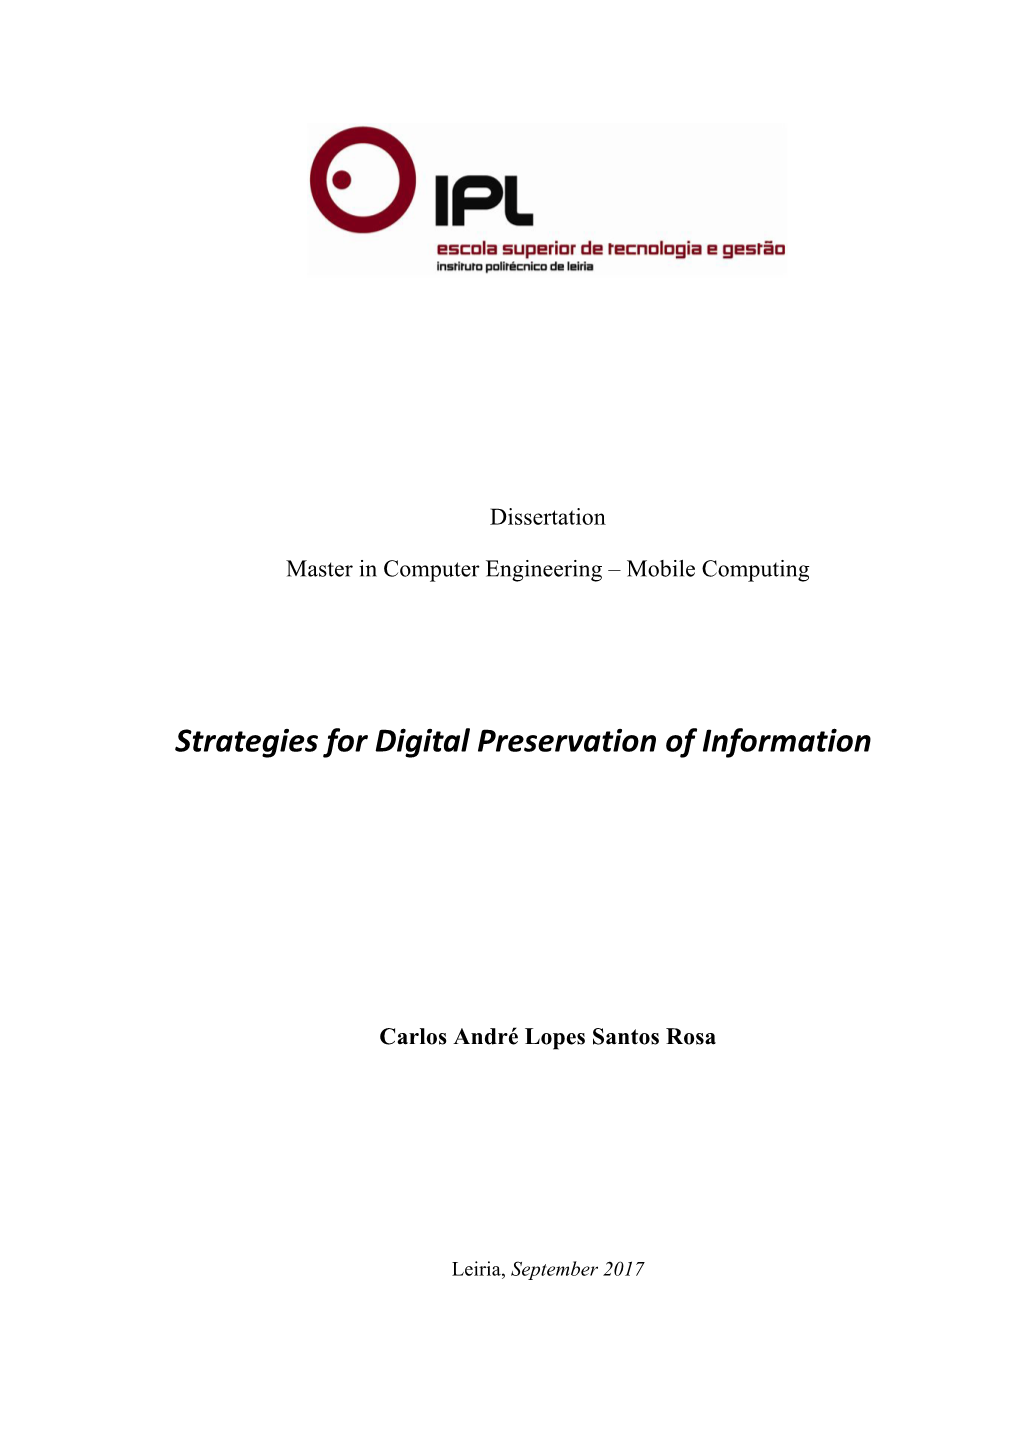 Strategies for Digital Preservation of Information